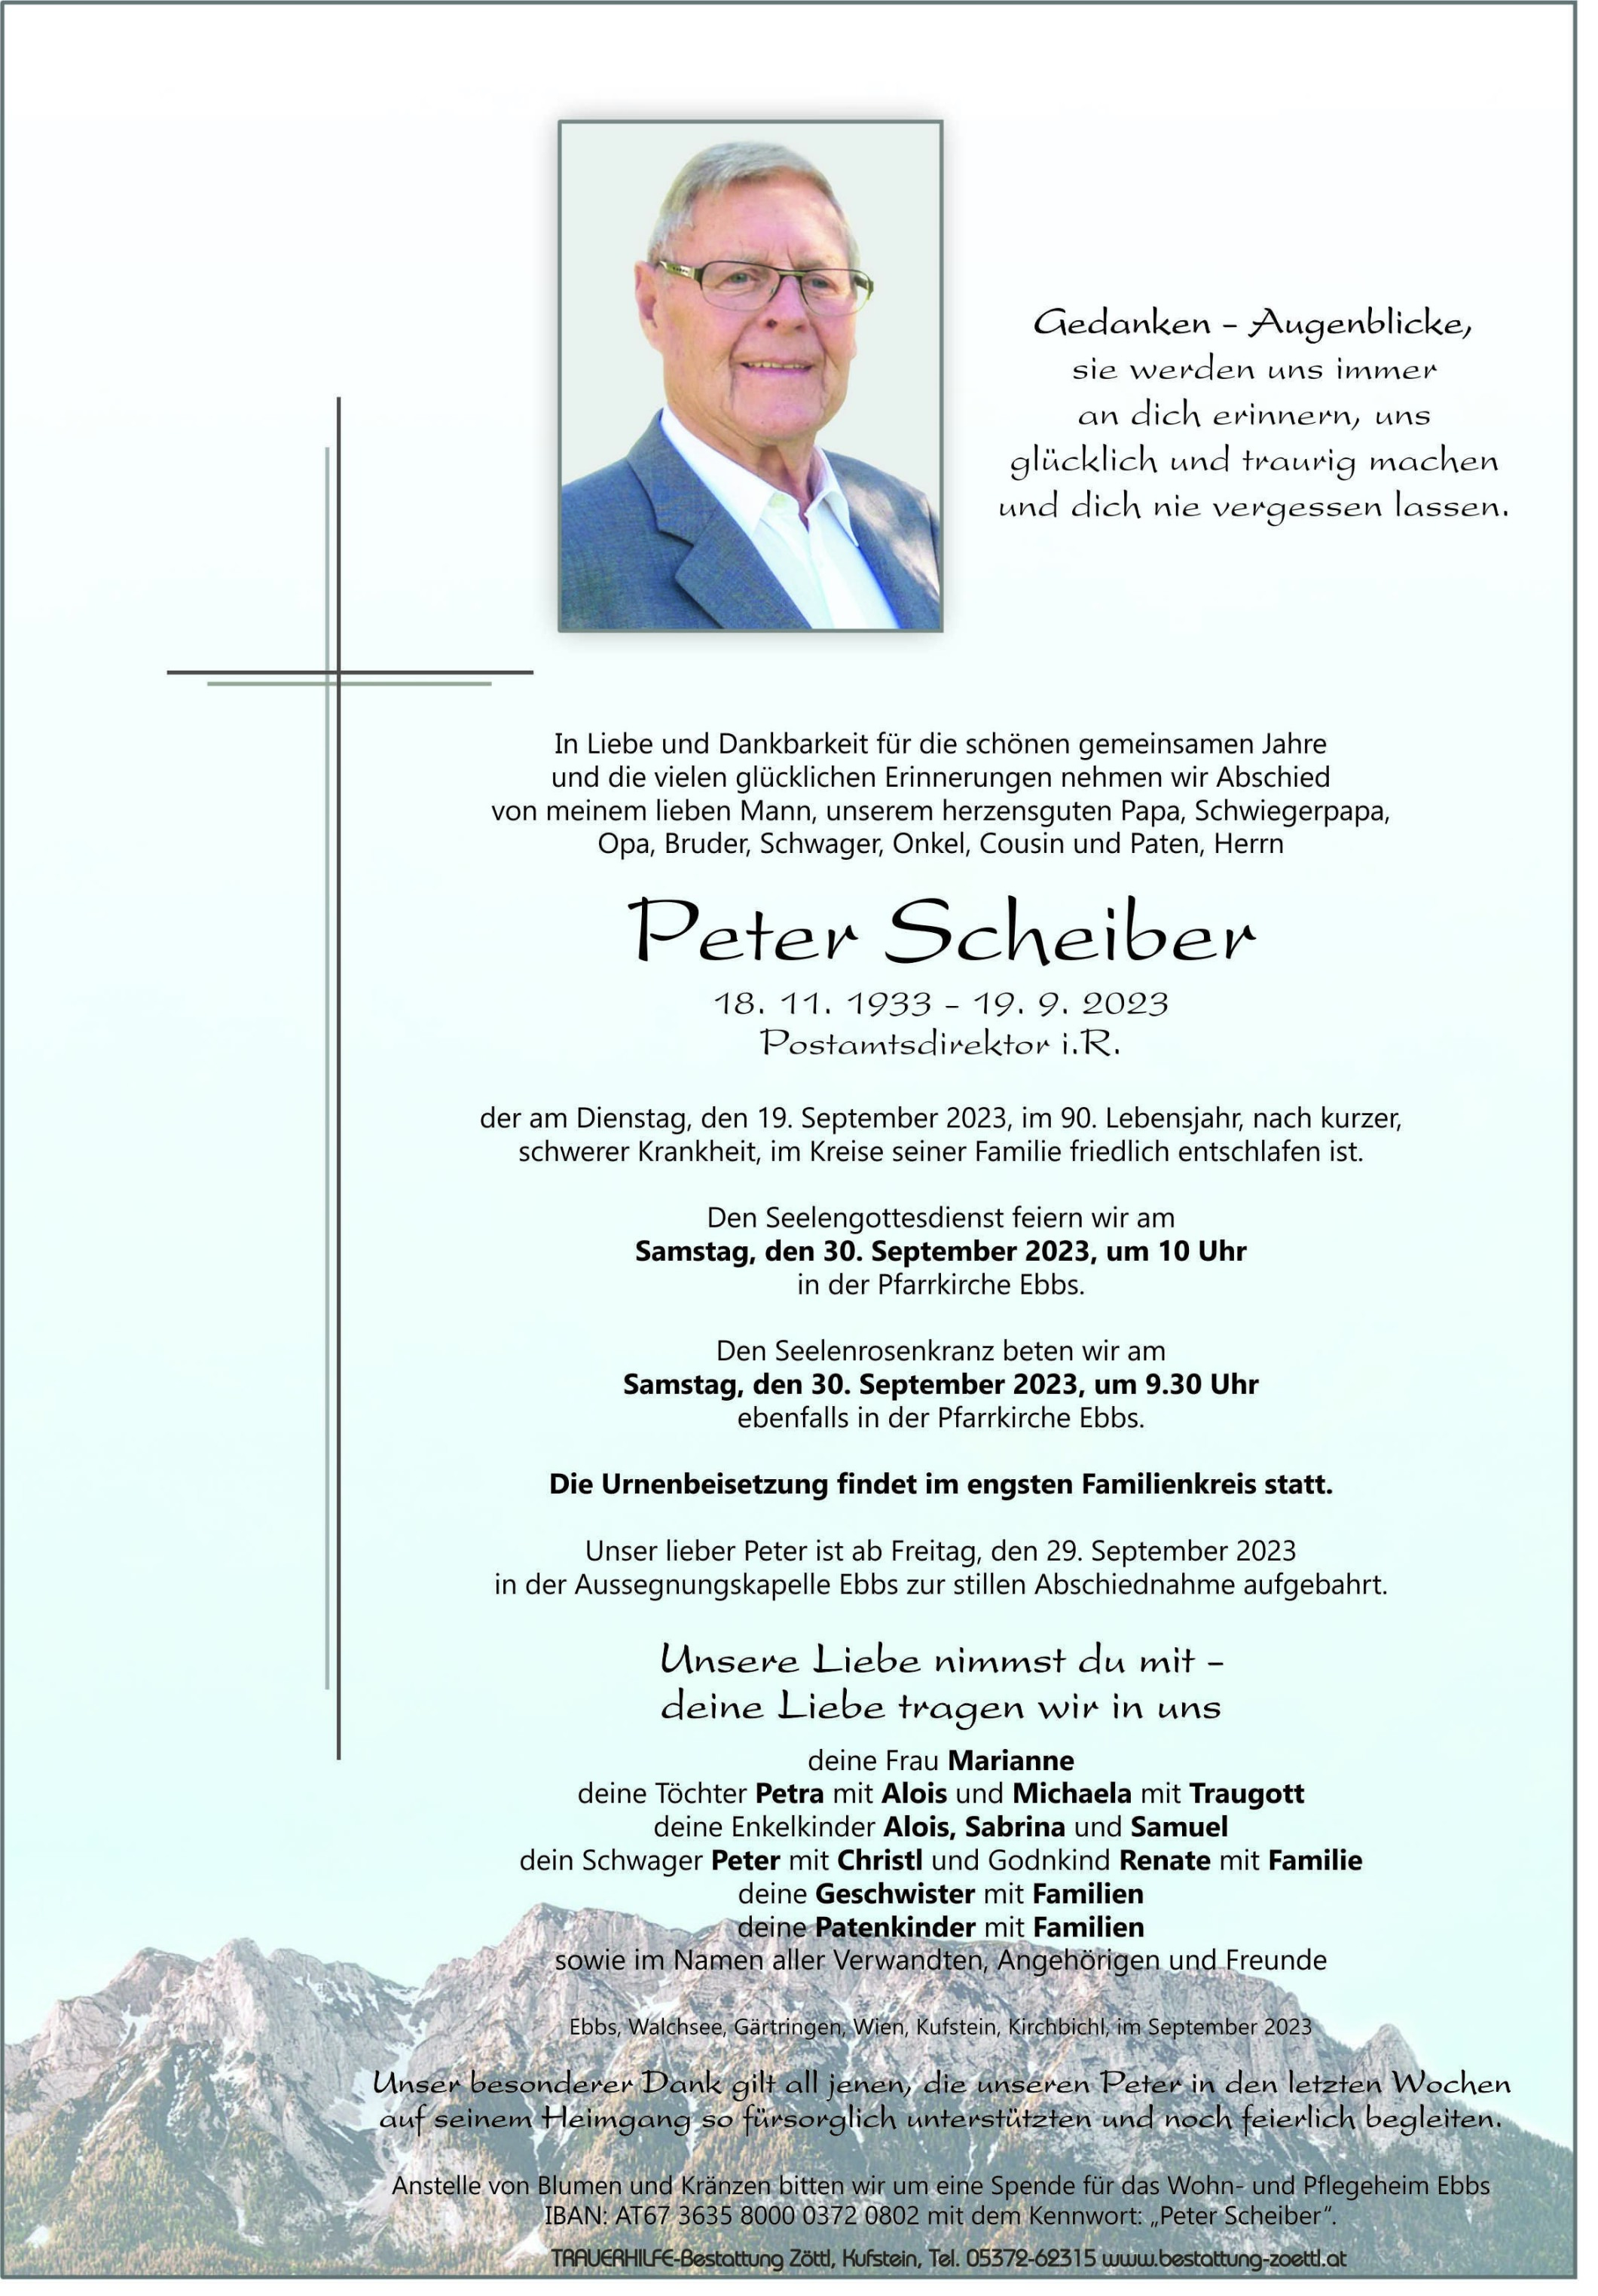 Peter Scheiber